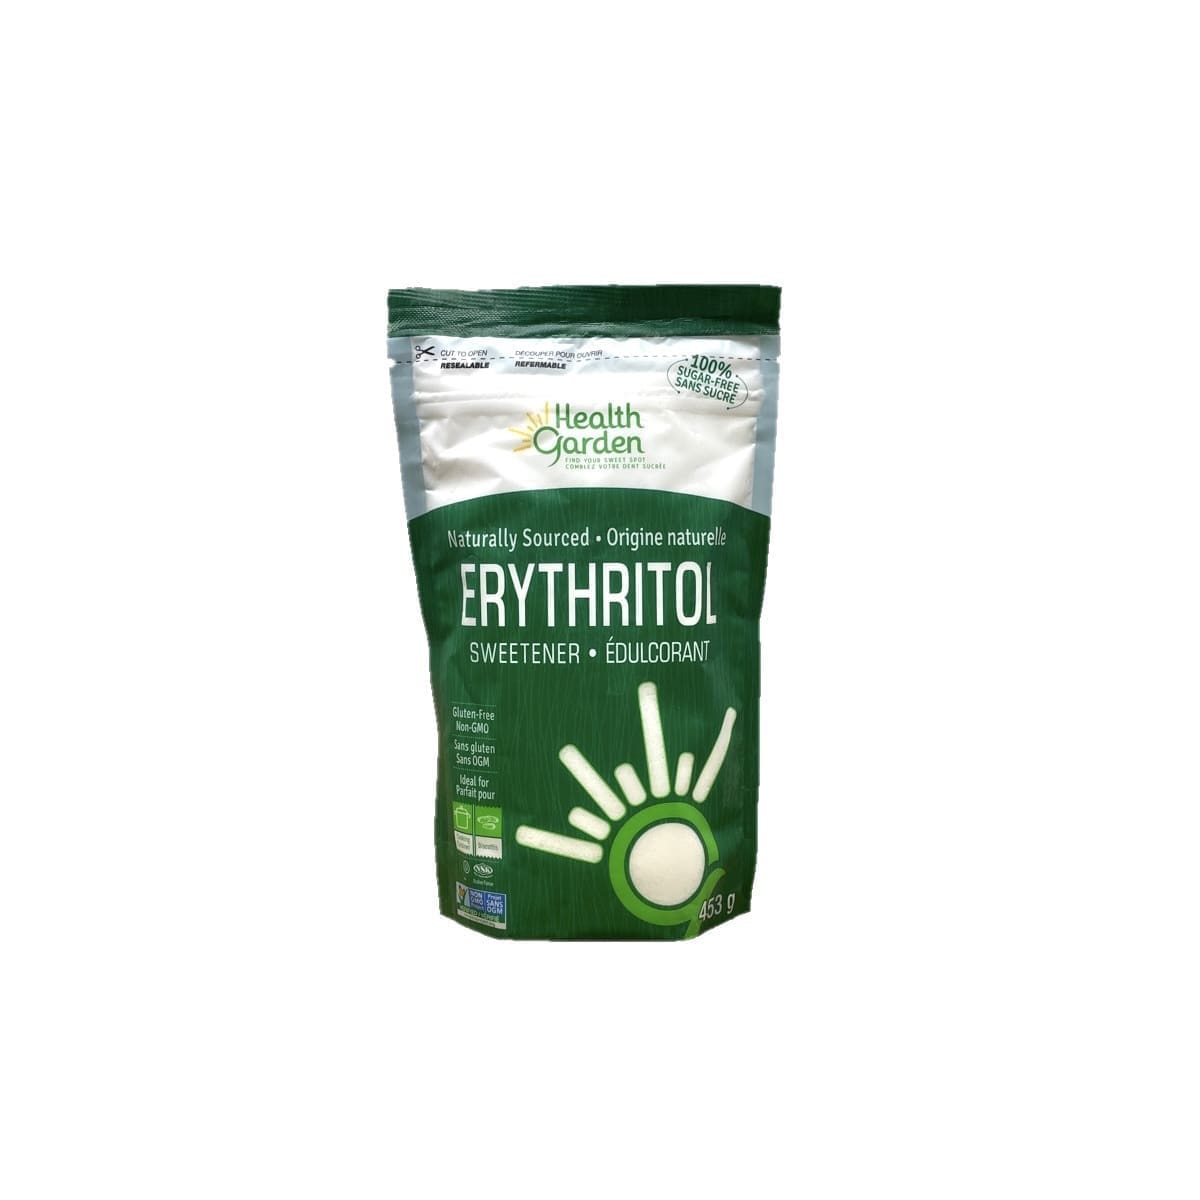 Health Garden Erythritol Sweetener (453g)